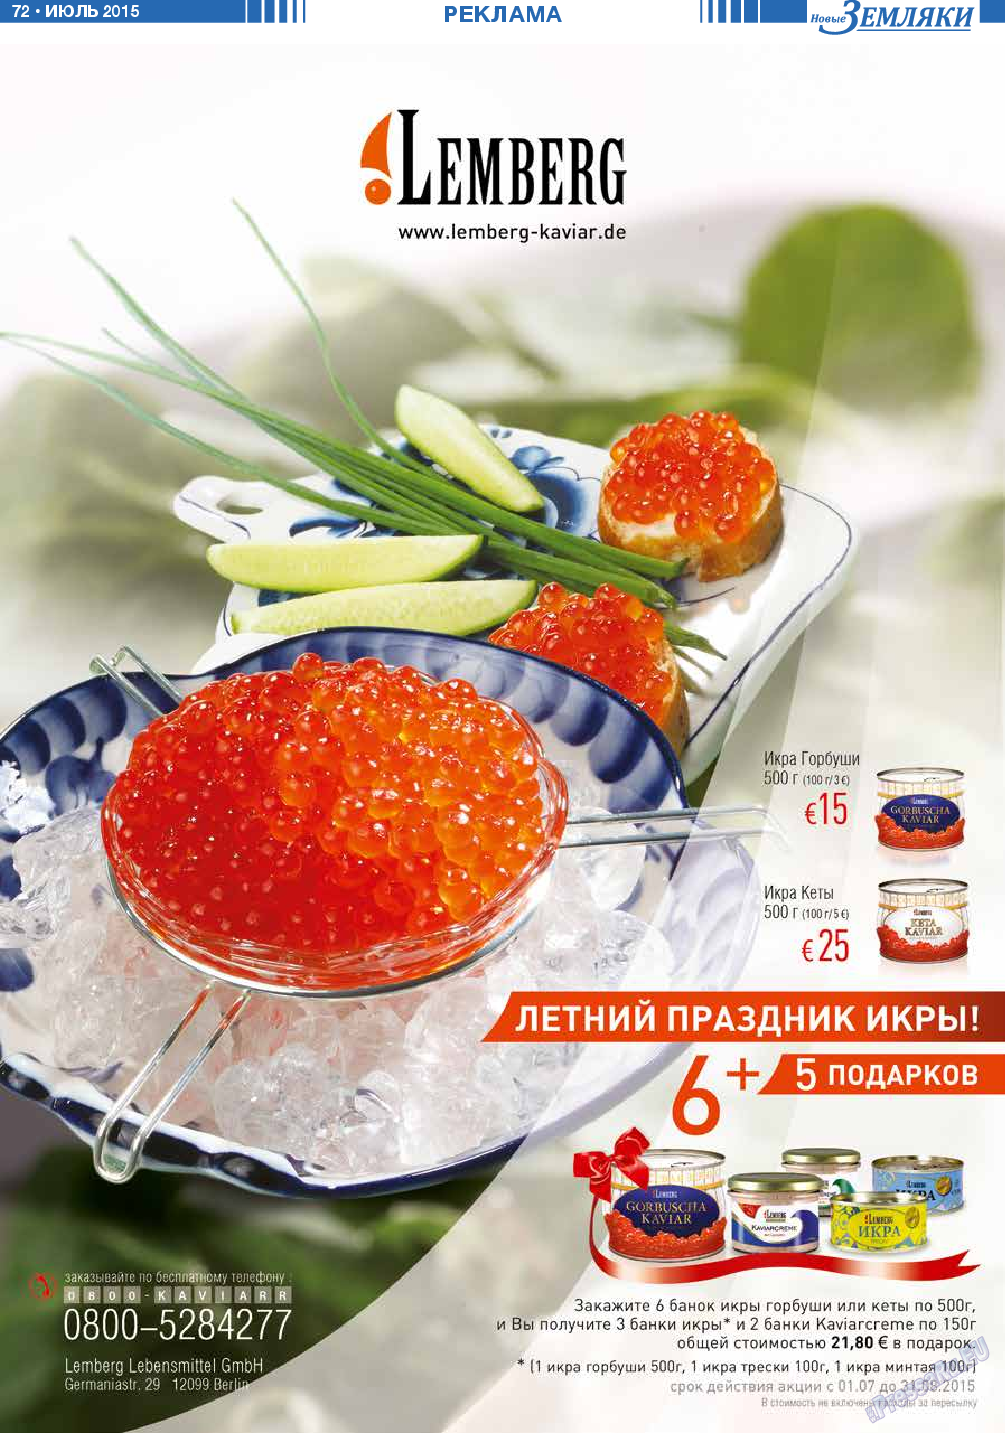 Новые Земляки, газета. 2015 №7 стр.72